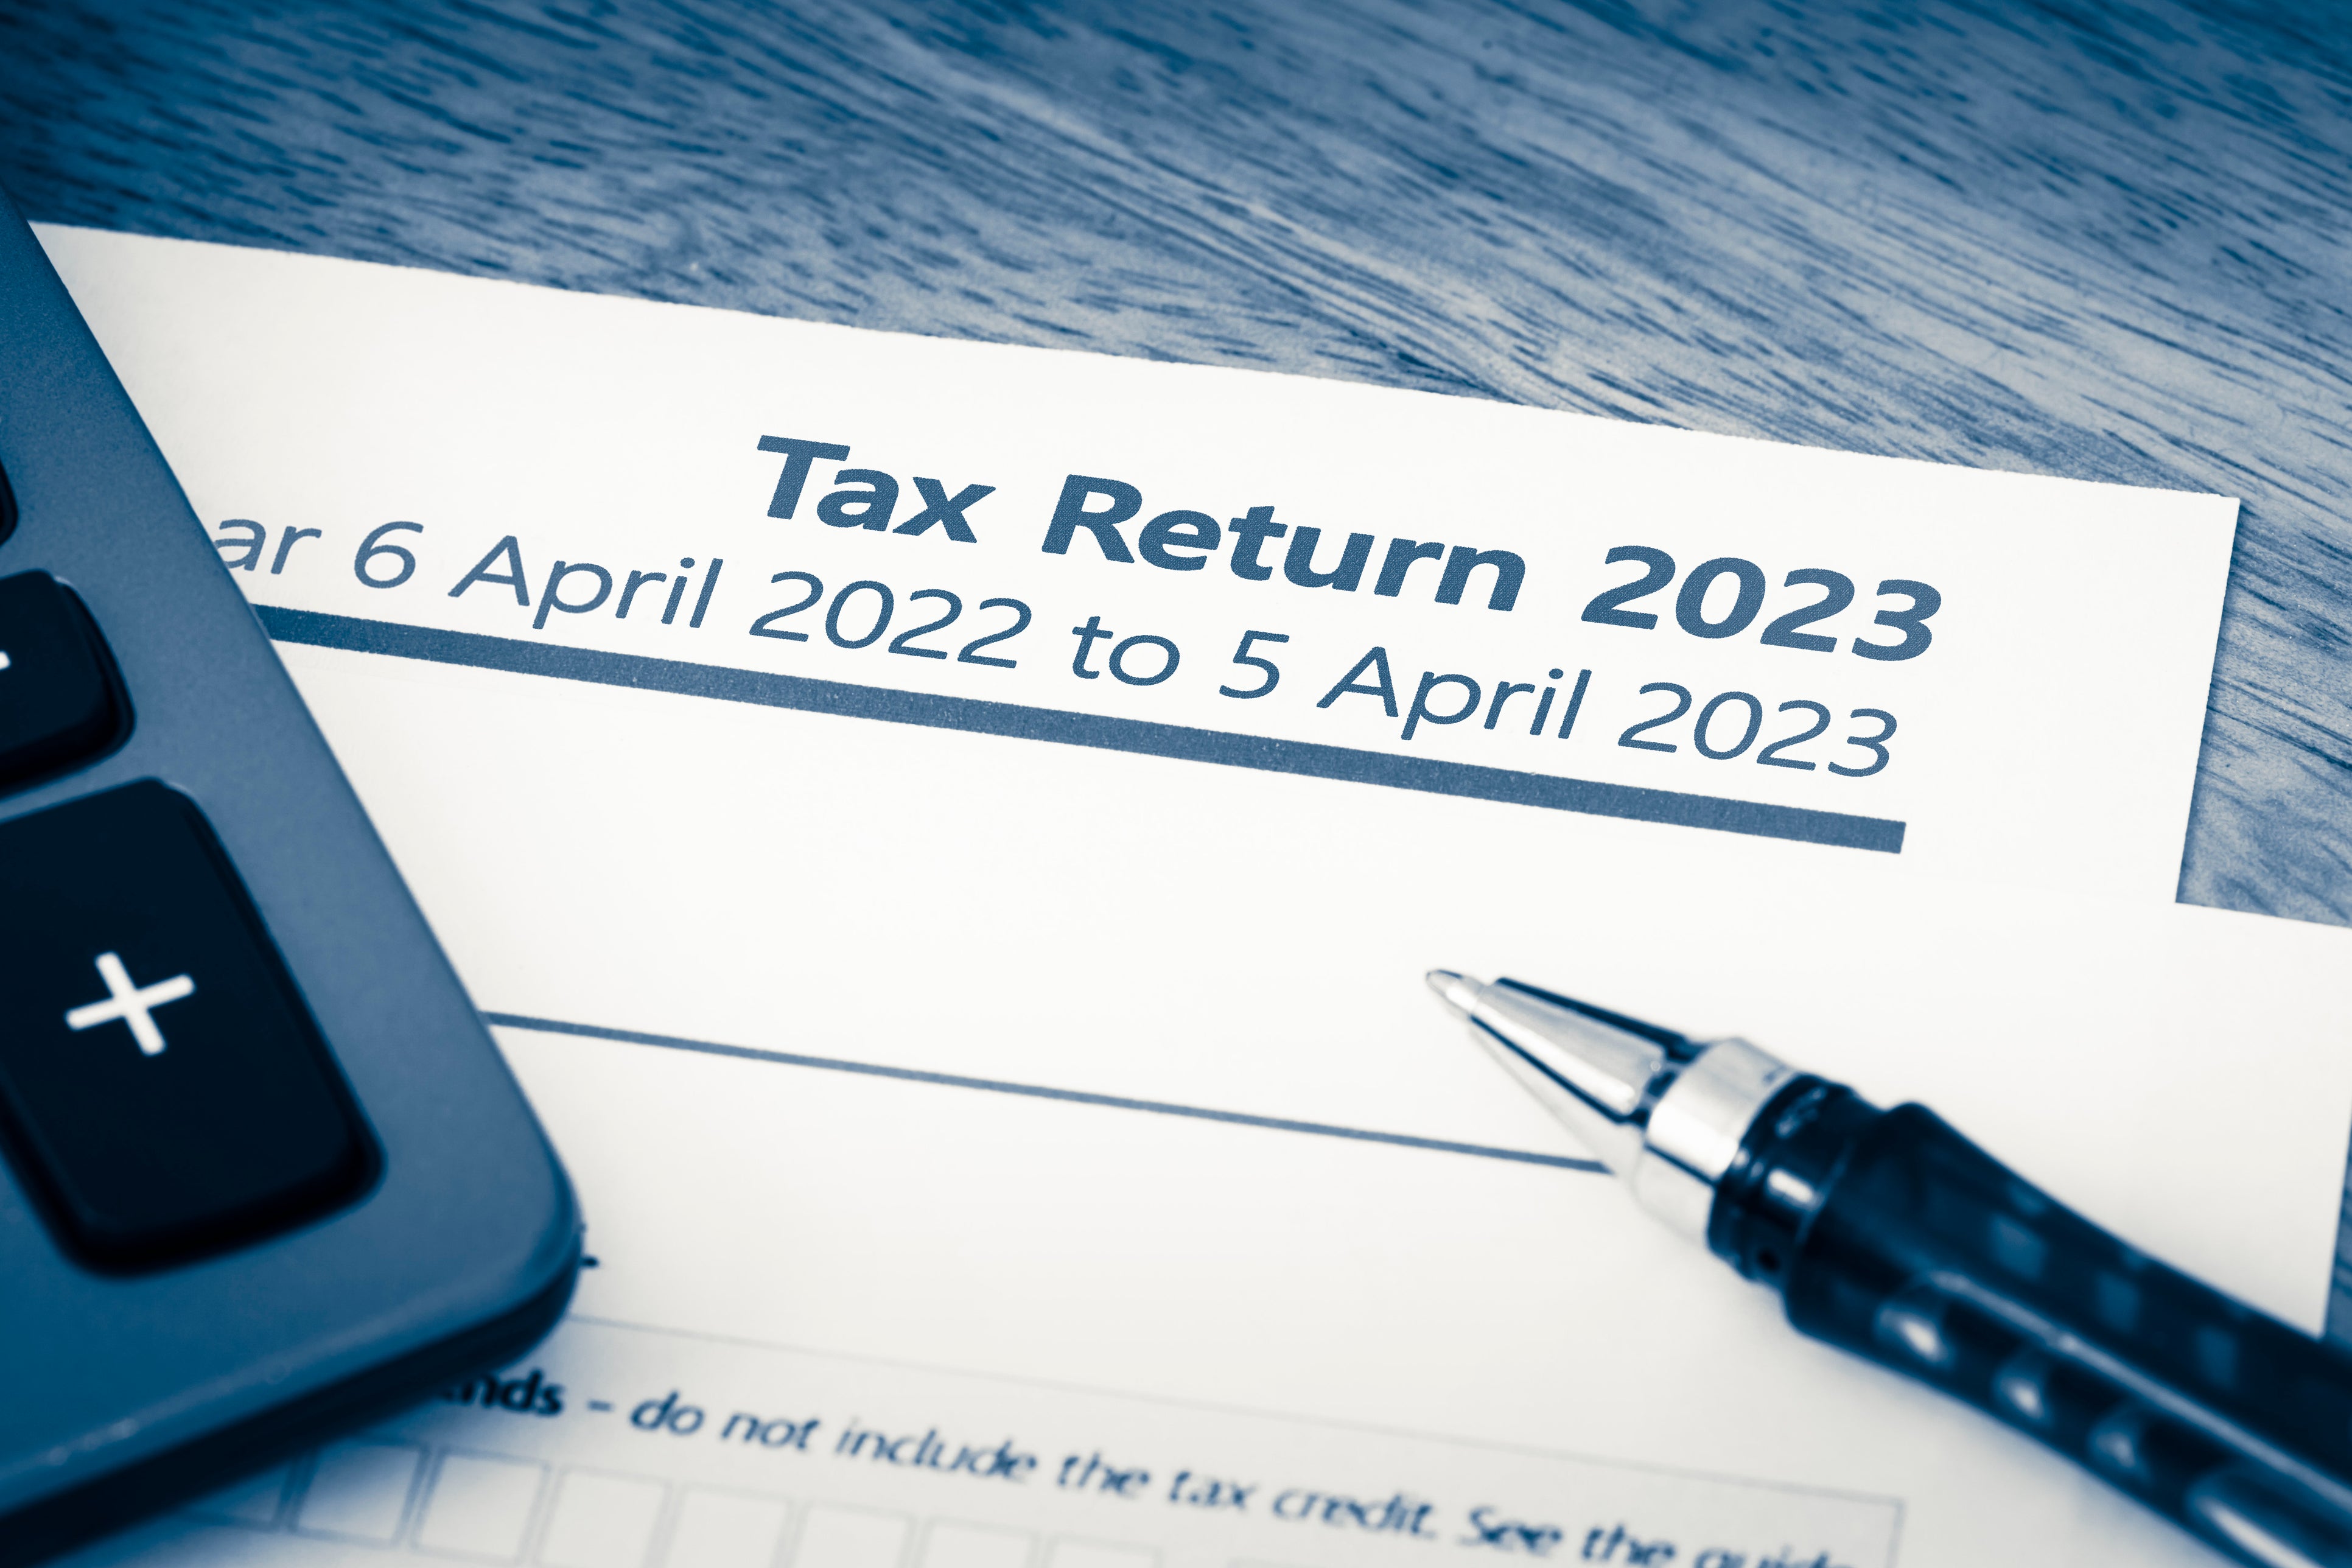 A tax return form